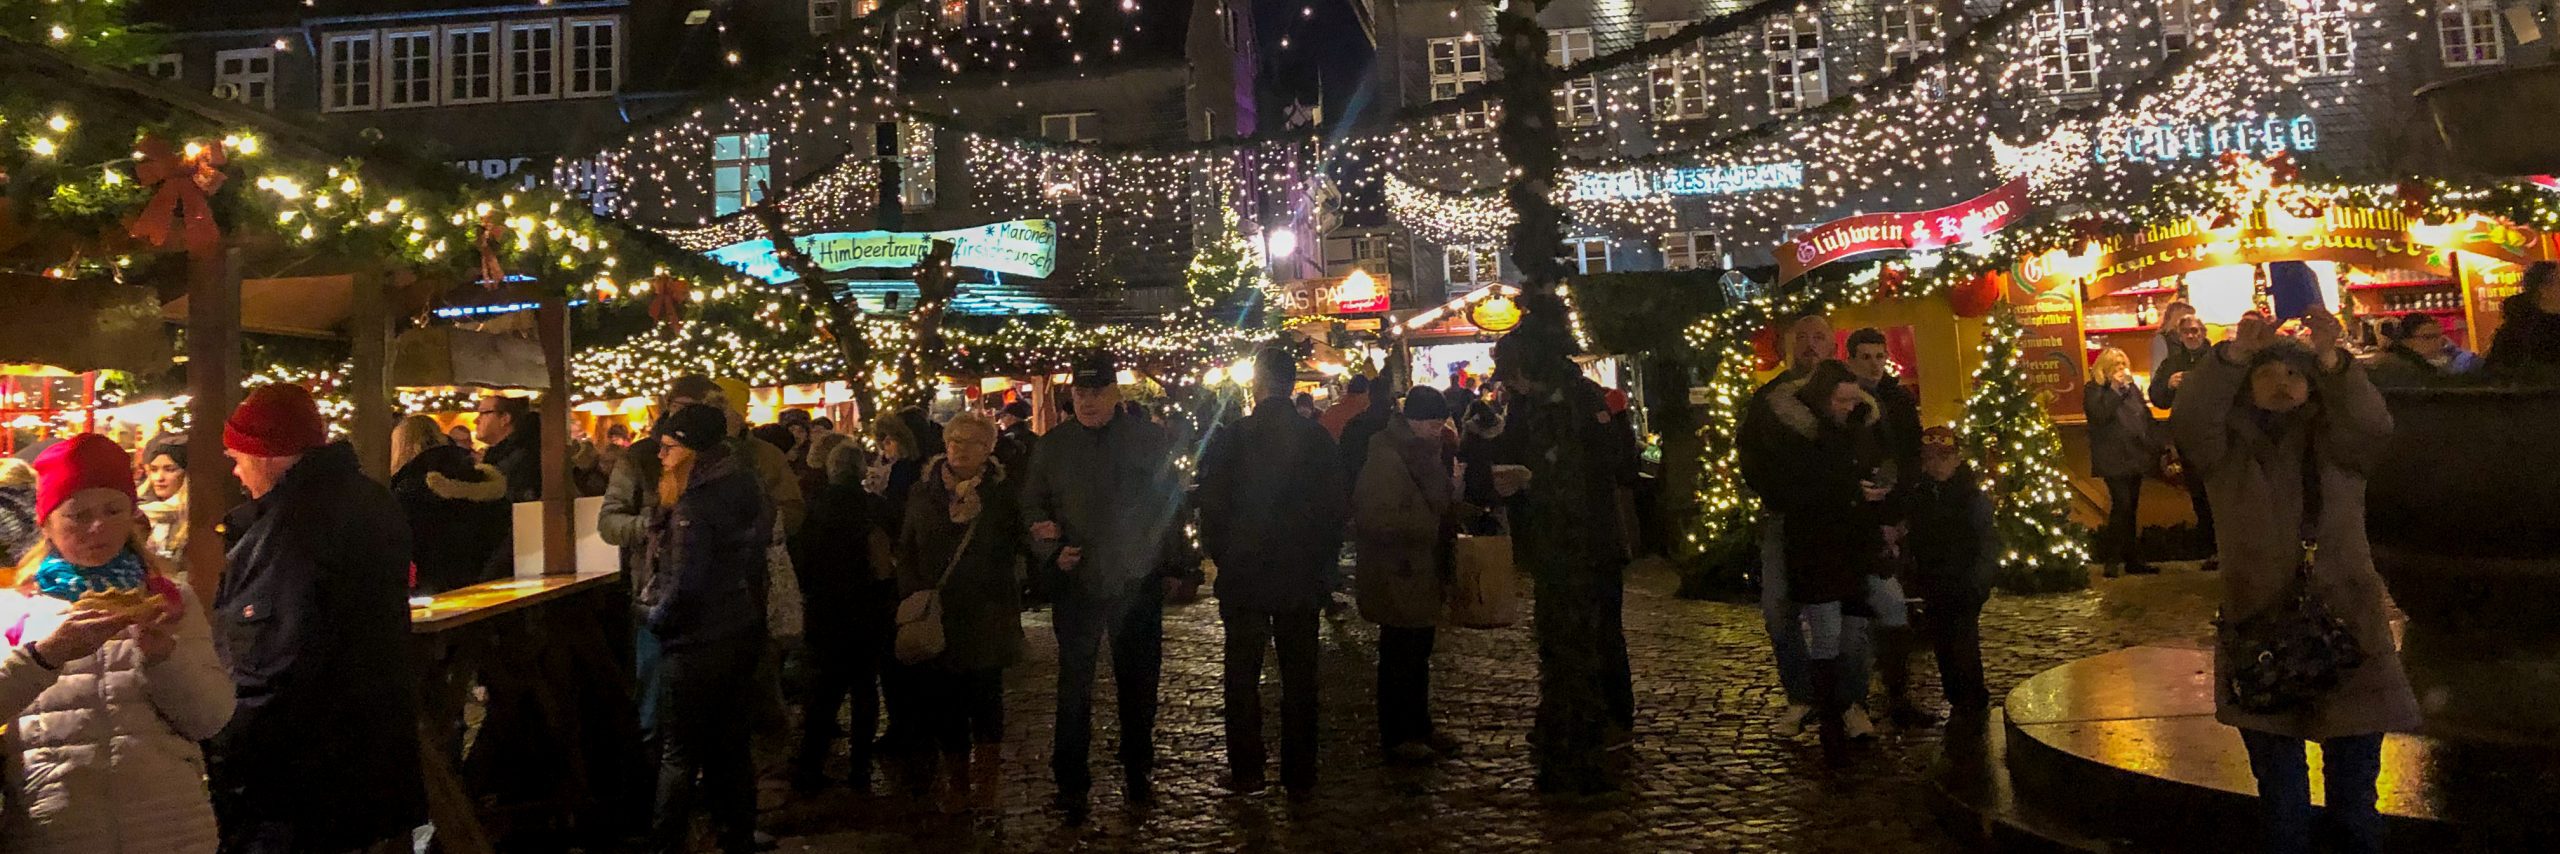 Goslar, ein Weihnachtsmarkt im Wald